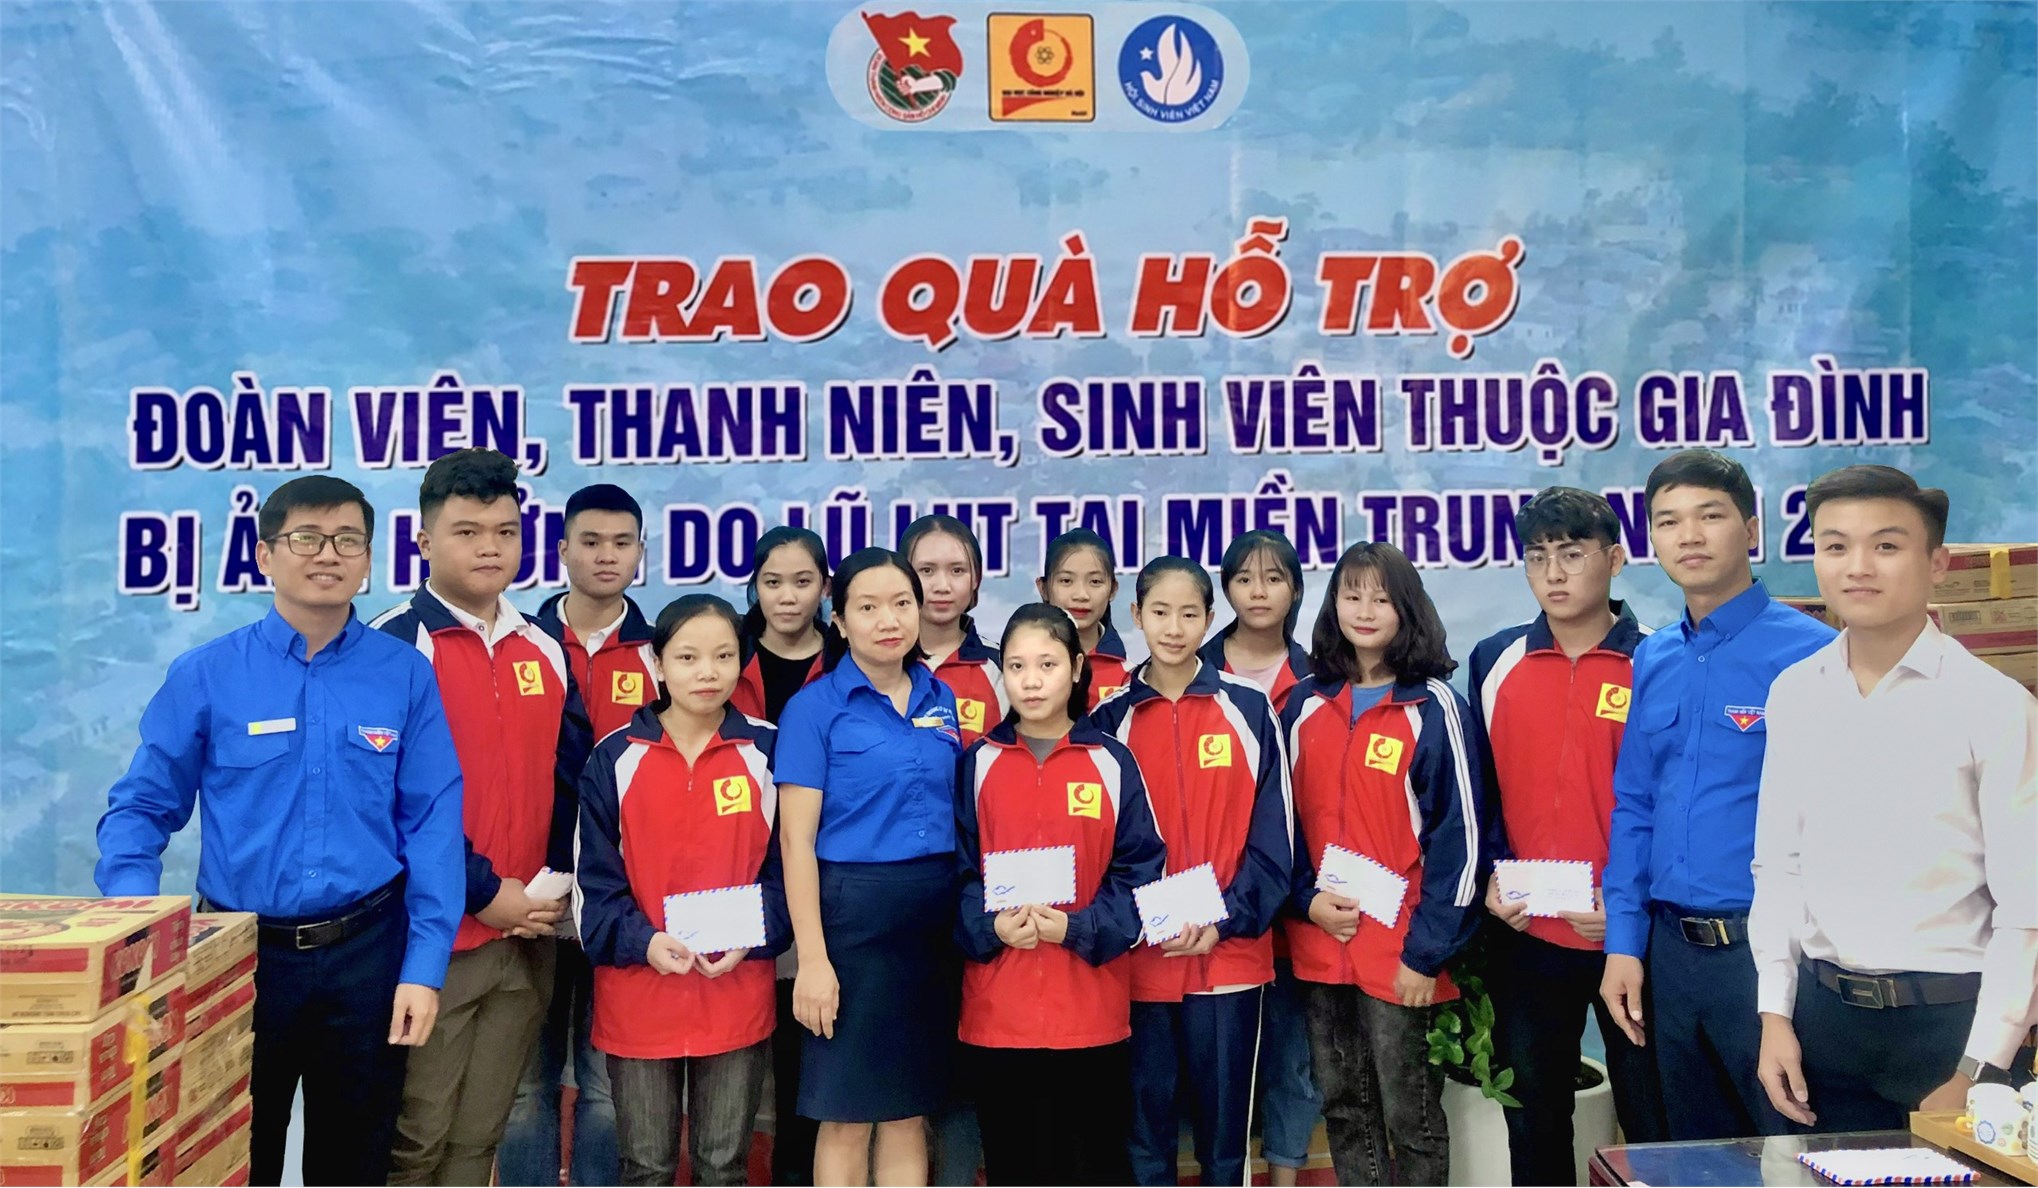 Đoàn Thanh niên – Hội Sinh viên trường Đại học Công nghiệp Hà Nội trao tặng gần 85 triệu đồng và nhiều nhu yếu phẩm cho sinh viên nhà trường và đồng bào miền Trung bị ảnh hưởng bởi bão lũ.